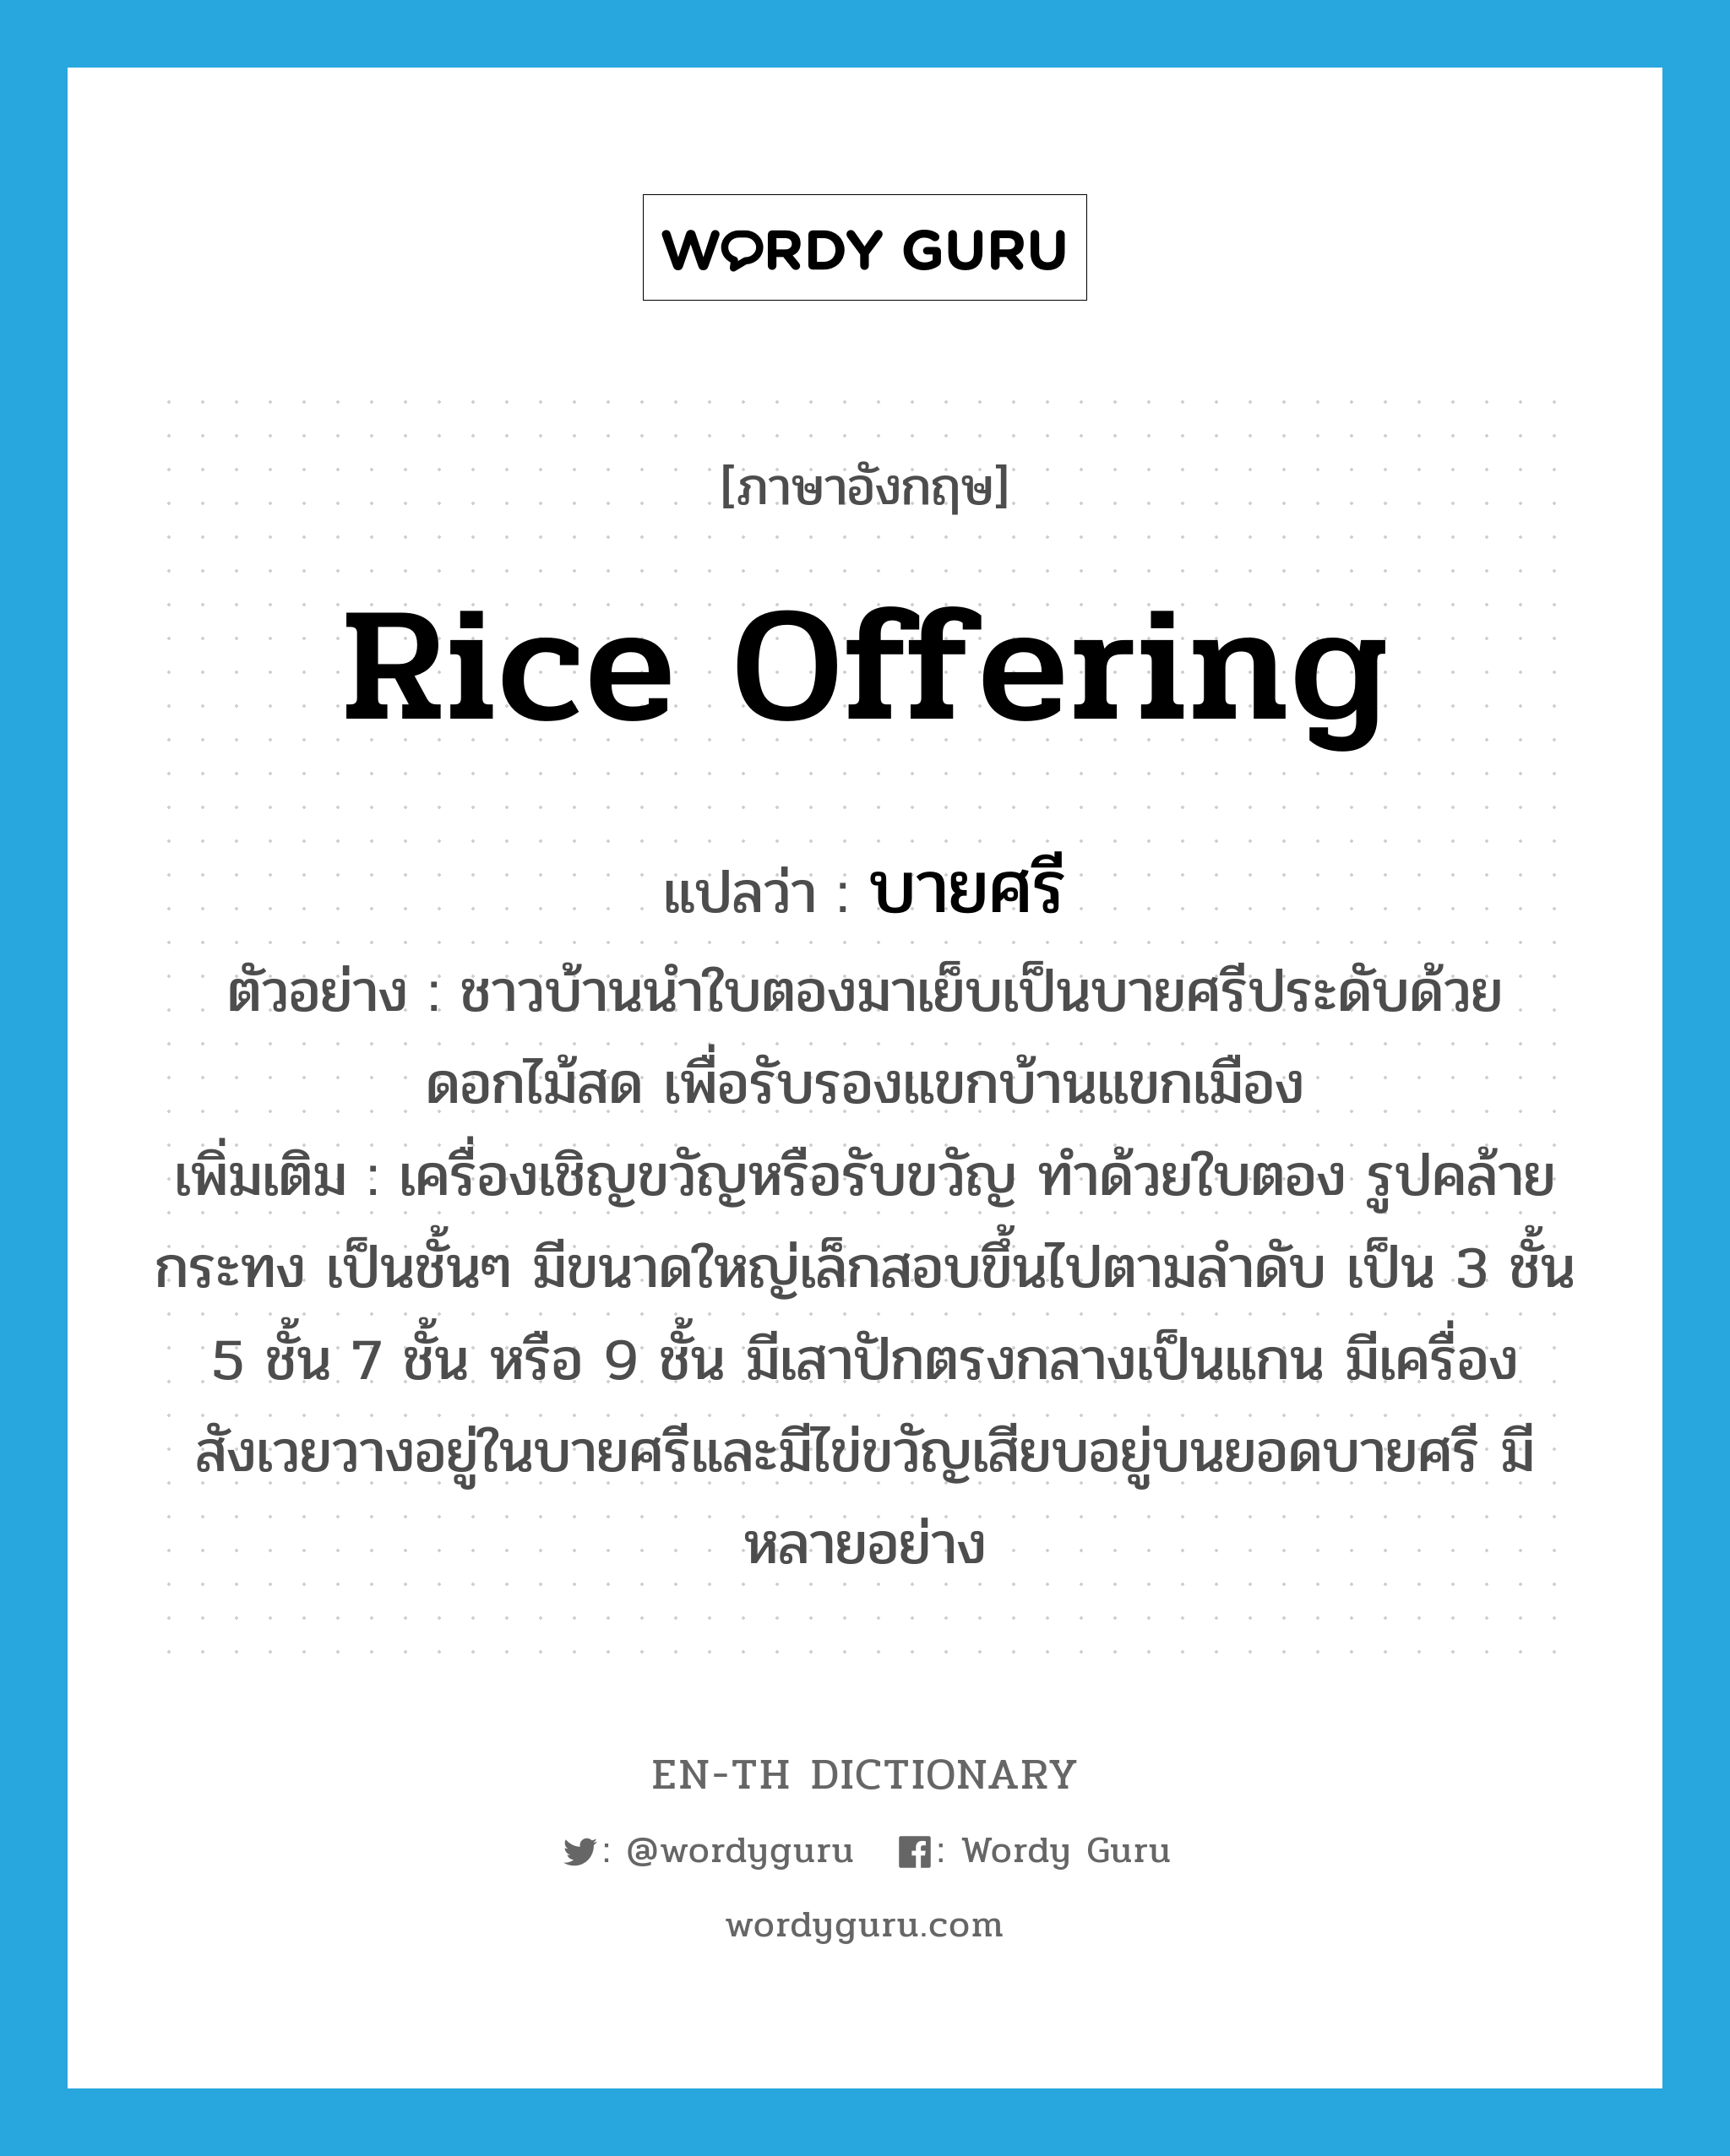 rice offering แปลว่า?, คำศัพท์ภาษาอังกฤษ rice offering แปลว่า บายศรี ประเภท N ตัวอย่าง ชาวบ้านนำใบตองมาเย็บเป็นบายศรีประดับด้วยดอกไม้สด เพื่อรับรองแขกบ้านแขกเมือง เพิ่มเติม เครื่องเชิญขวัญหรือรับขวัญ ทำด้วยใบตอง รูปคล้ายกระทง เป็นชั้นๆ มีขนาดใหญ่เล็กสอบขึ้นไปตามลำดับ เป็น 3 ชั้น 5 ชั้น 7 ชั้น หรือ 9 ชั้น มีเสาปักตรงกลางเป็นแกน มีเครื่องสังเวยวางอยู่ในบายศรีและมีไข่ขวัญเสียบอยู่บนยอดบายศรี มีหลายอย่าง หมวด N